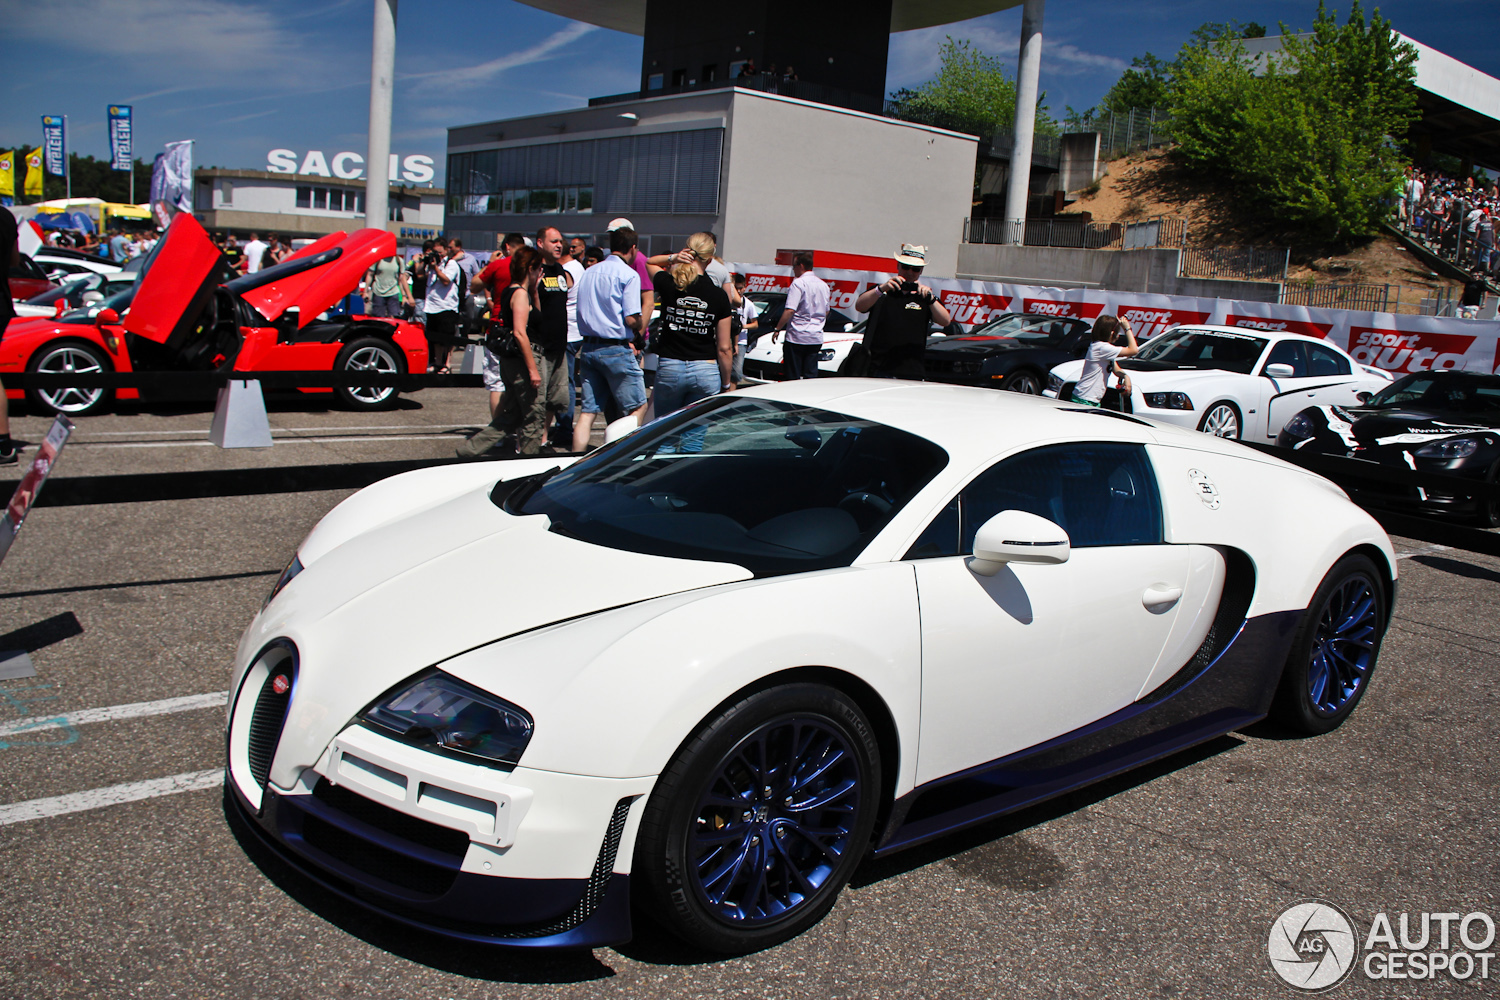 Sport Auto High Performance Days 2012: Veyron 16.4 Super Sport in nieuwe kleuren